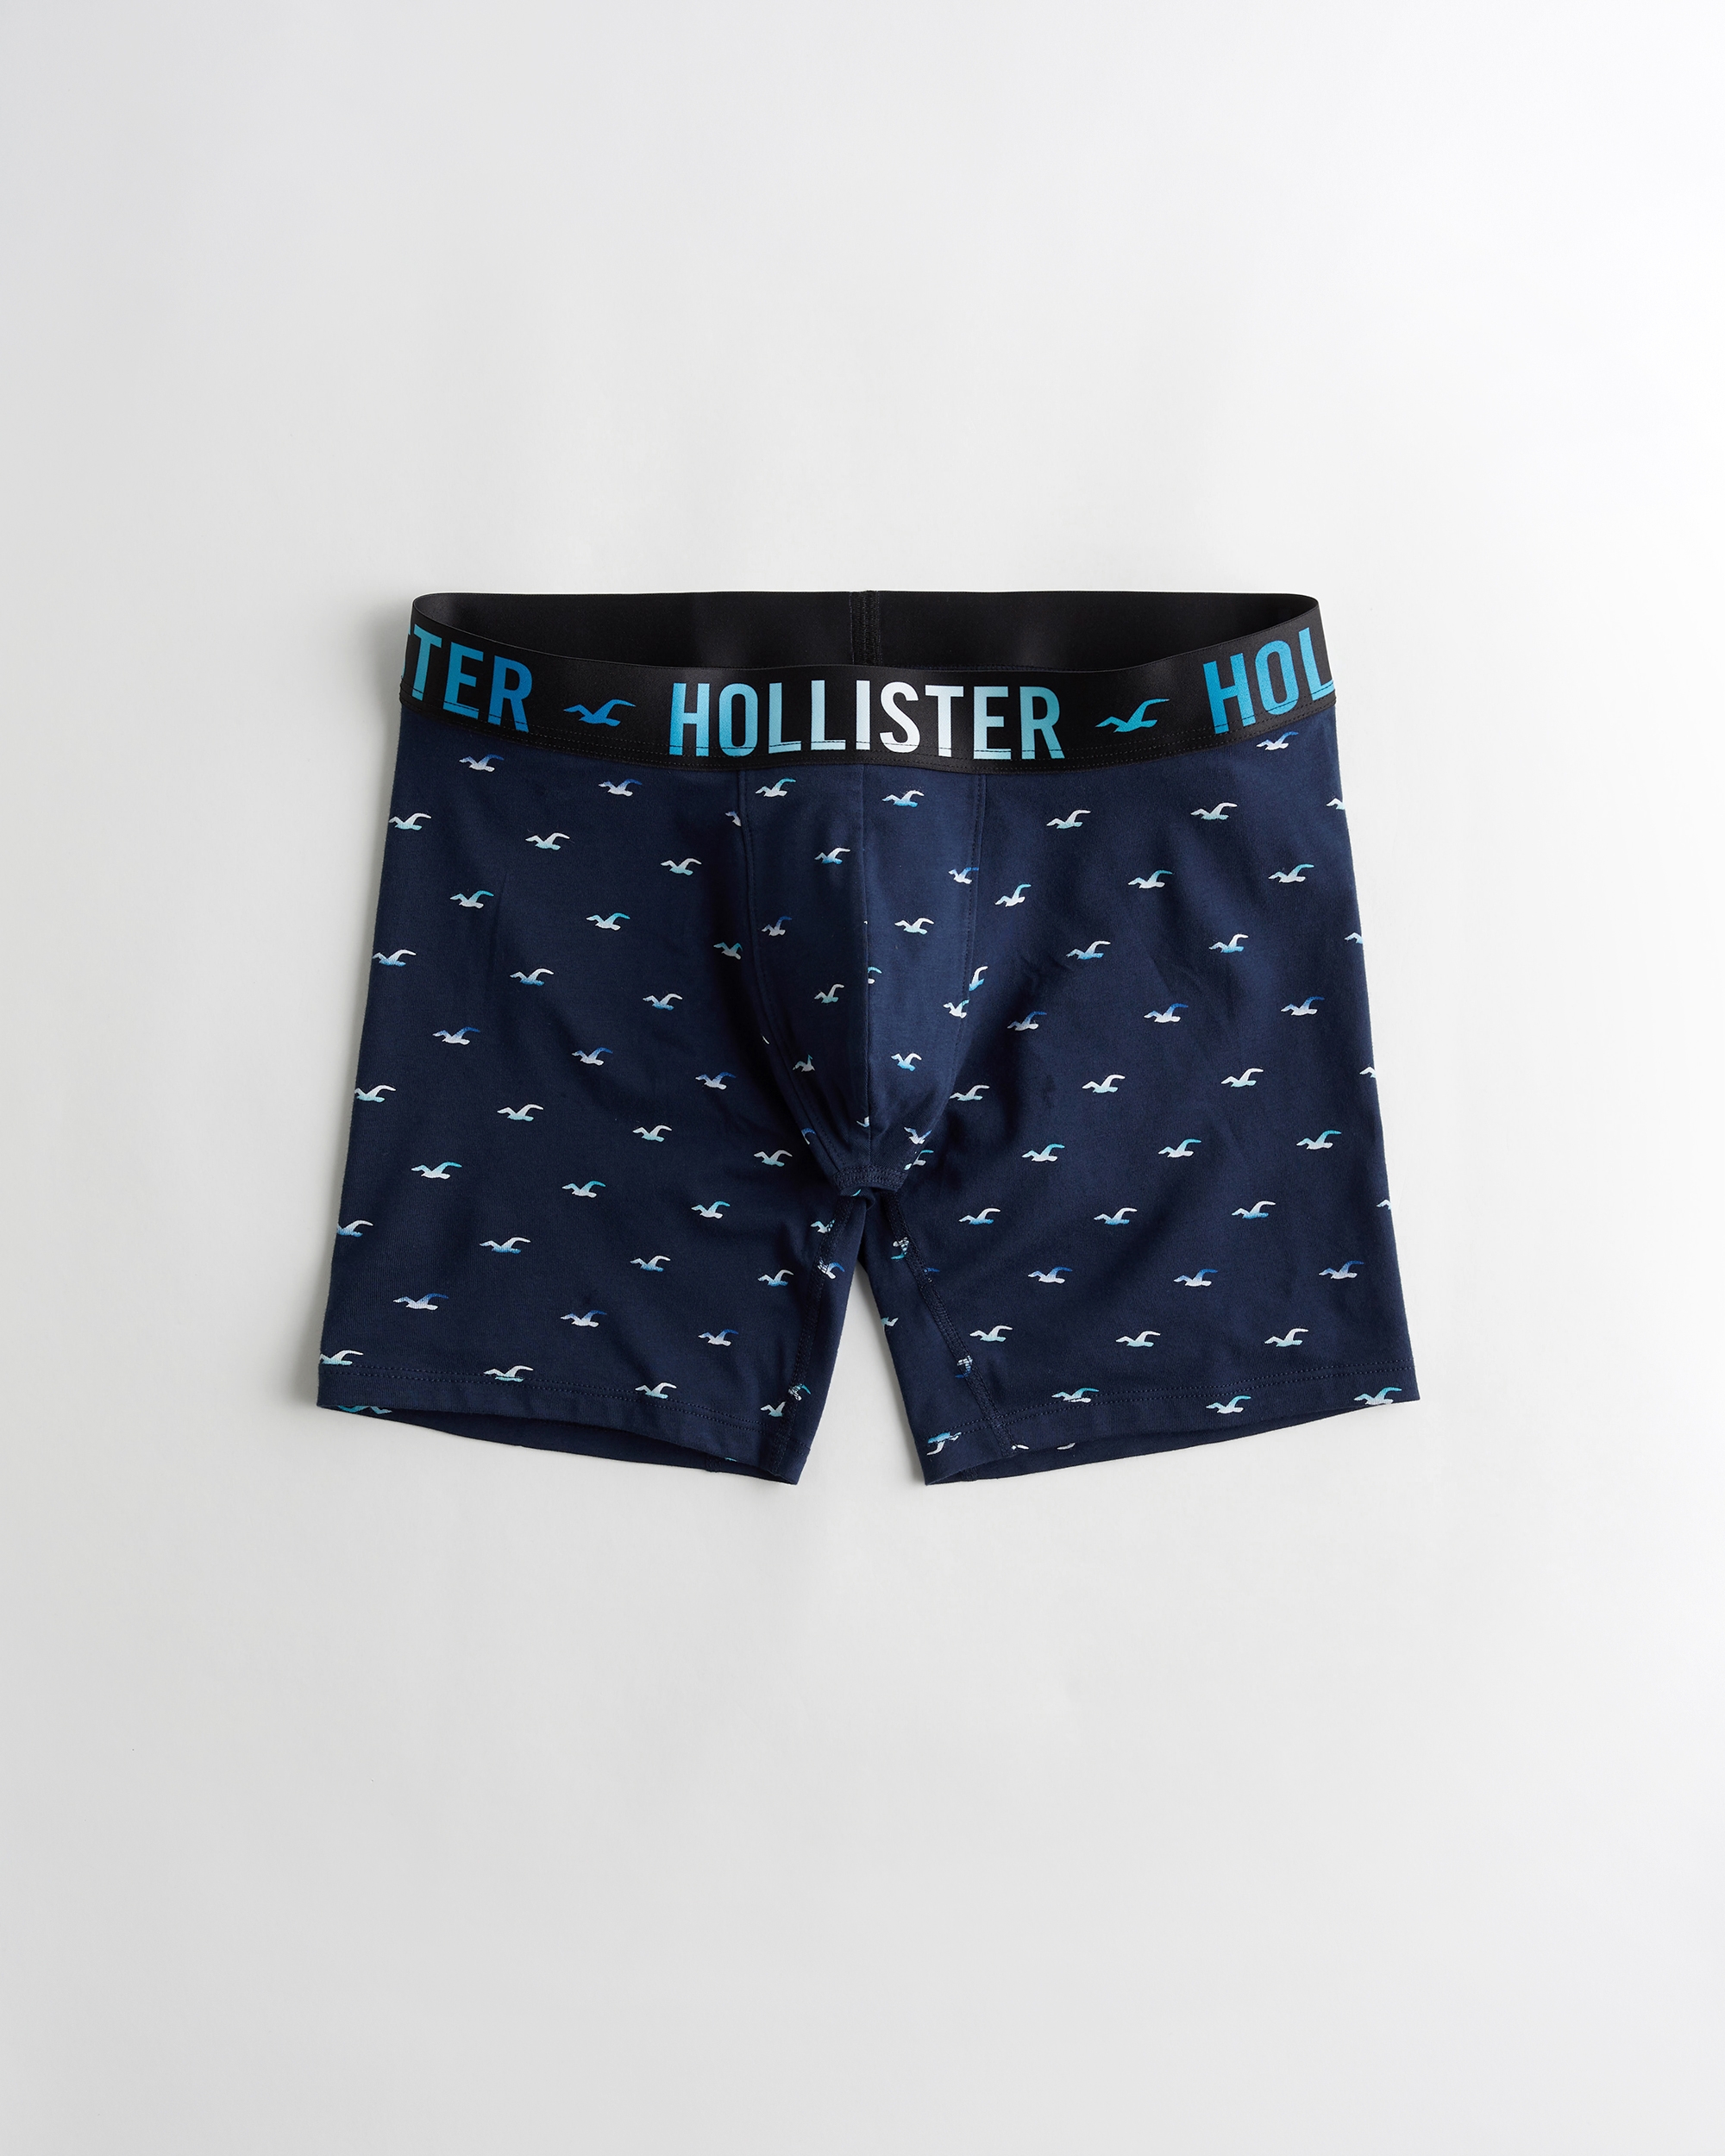 hollister sport underwear